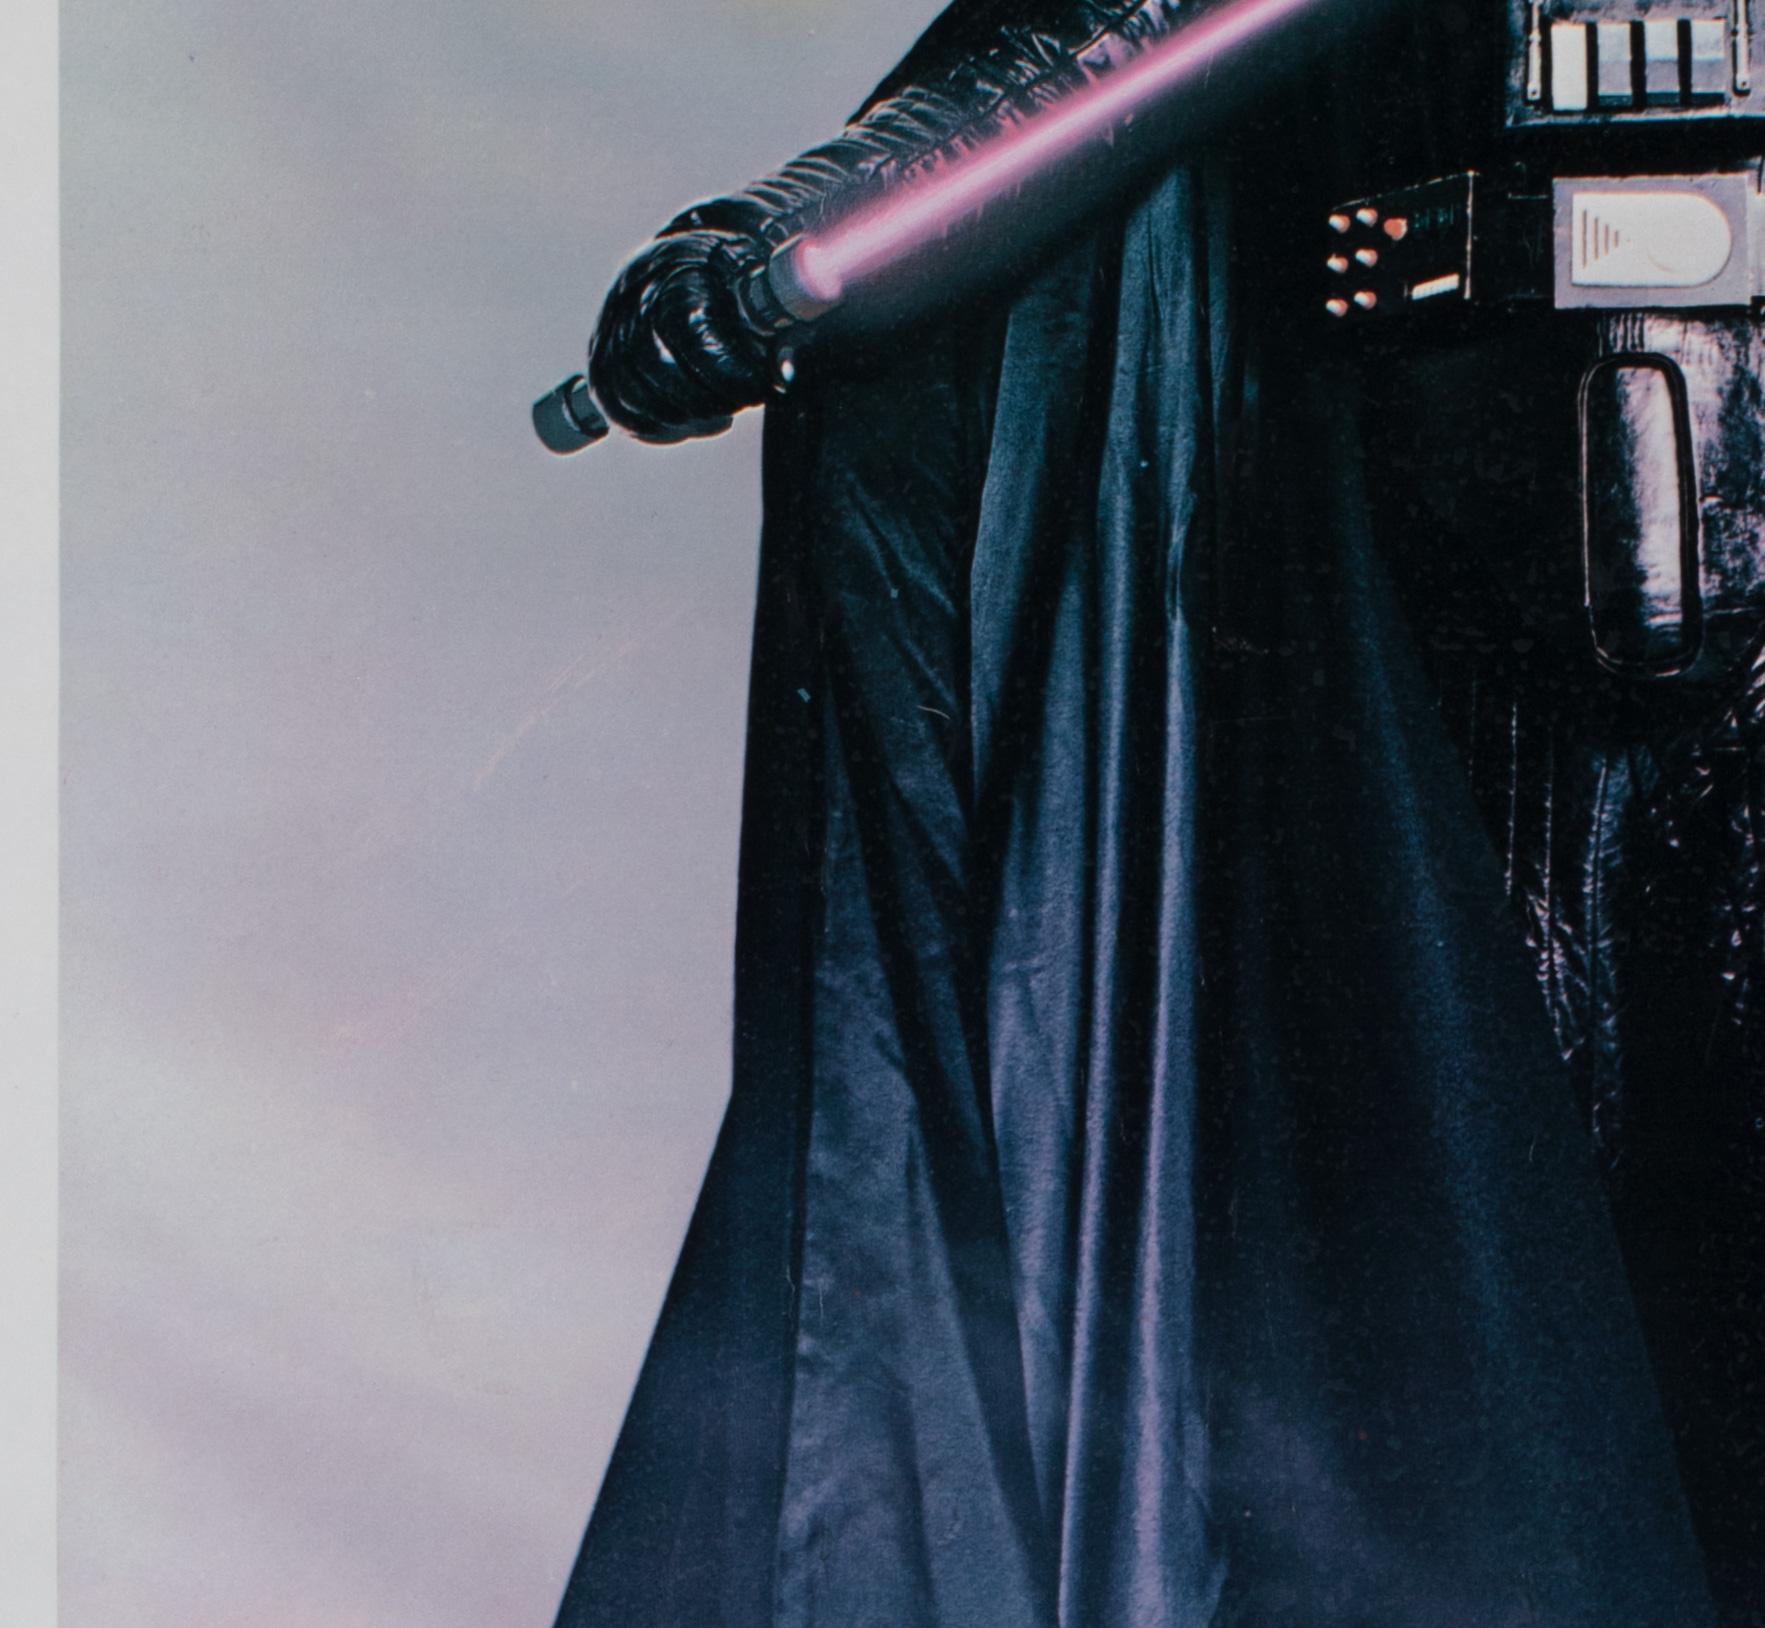 American Star Wars Darth Vader 1977 Vintage Factor Inc Commercial Poster For Sale